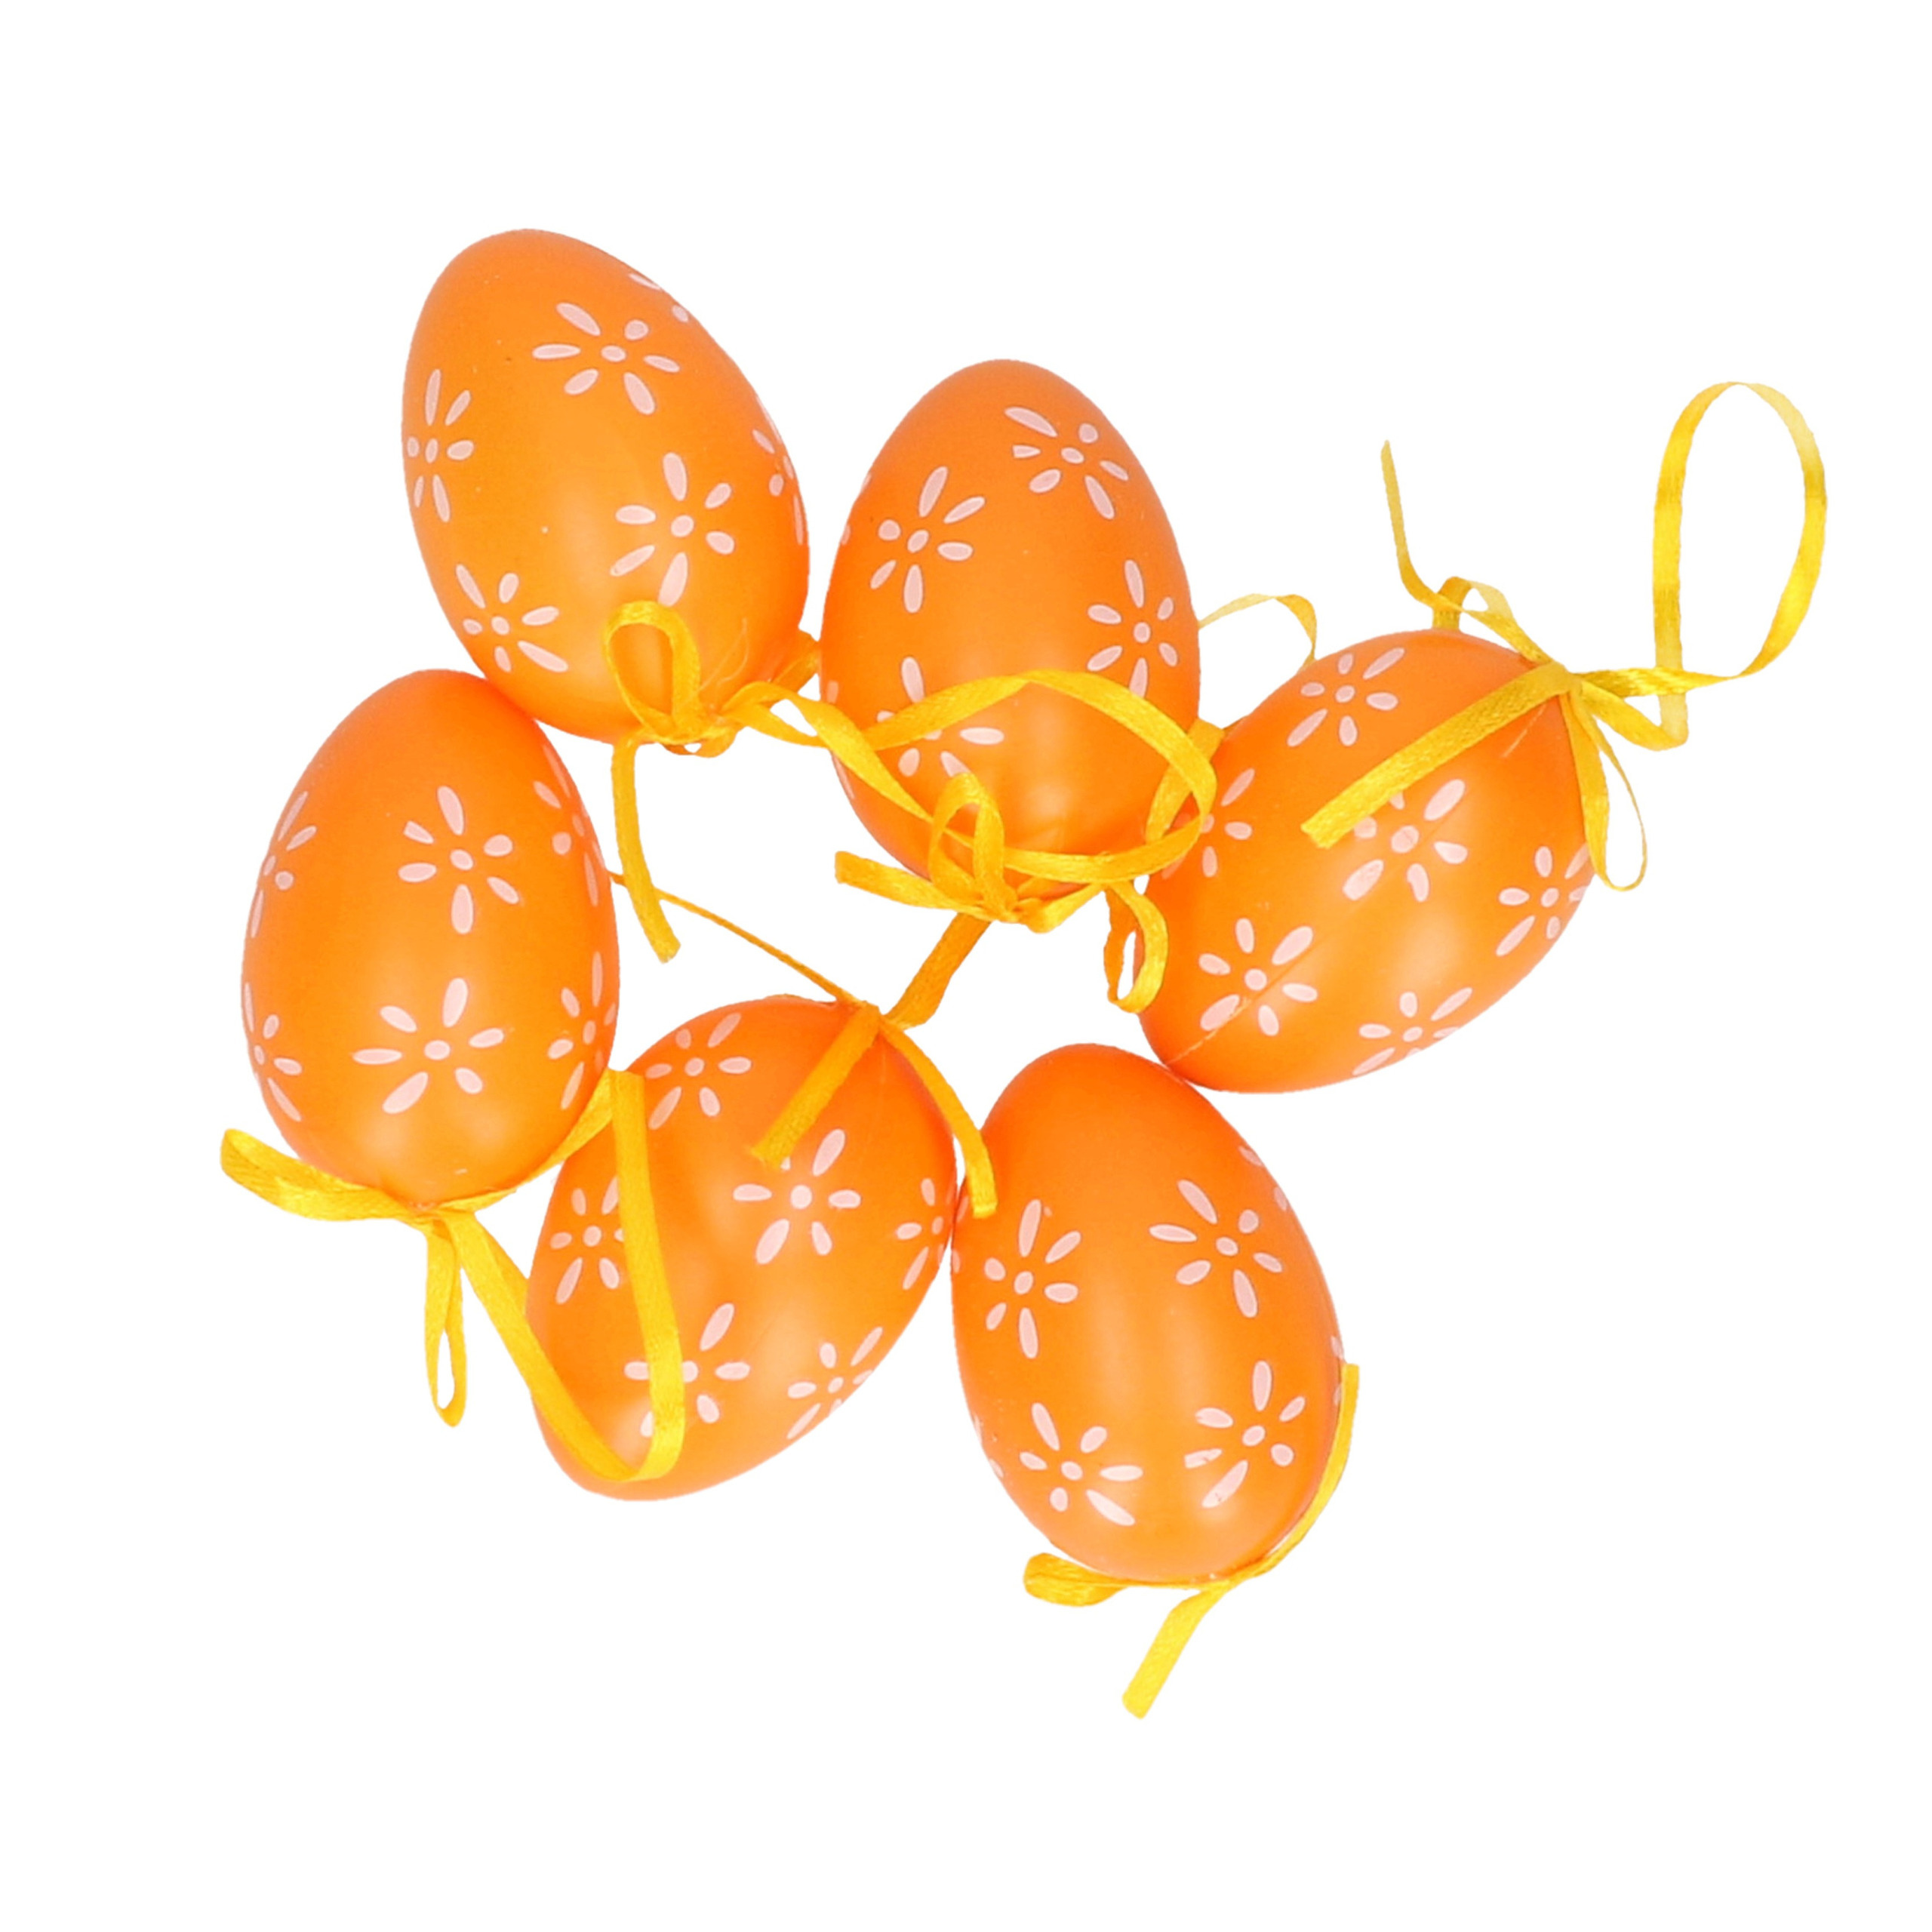 6x stuks Pasen-paas hangdecoratie paaseieren oranje 6 cm